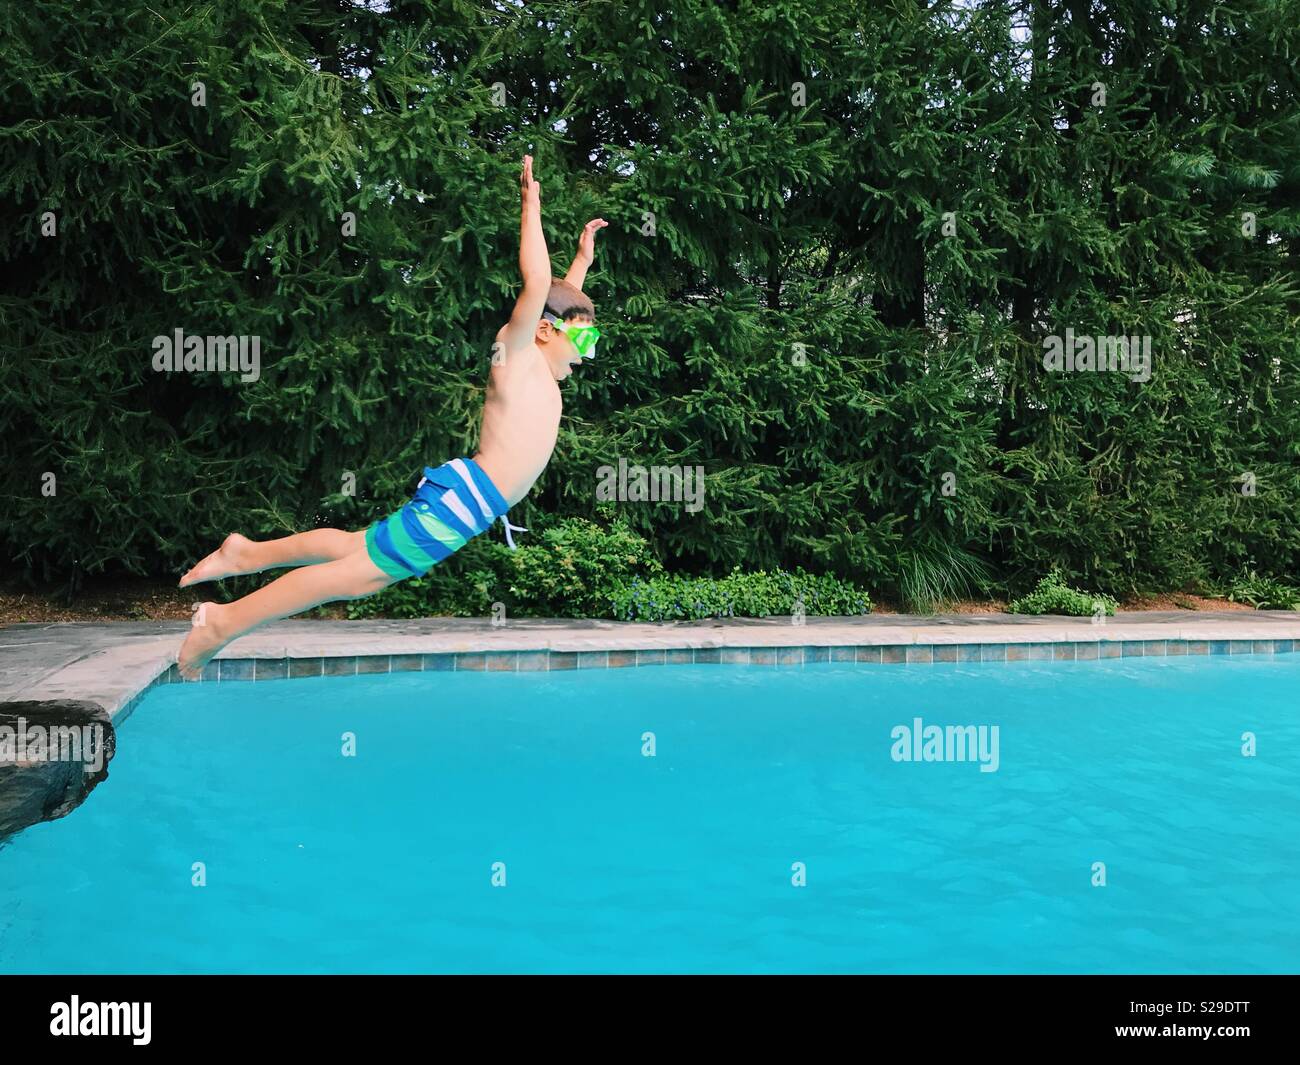 Un joven saltando a una piscina al aire libre durante el verano. Foto de stock